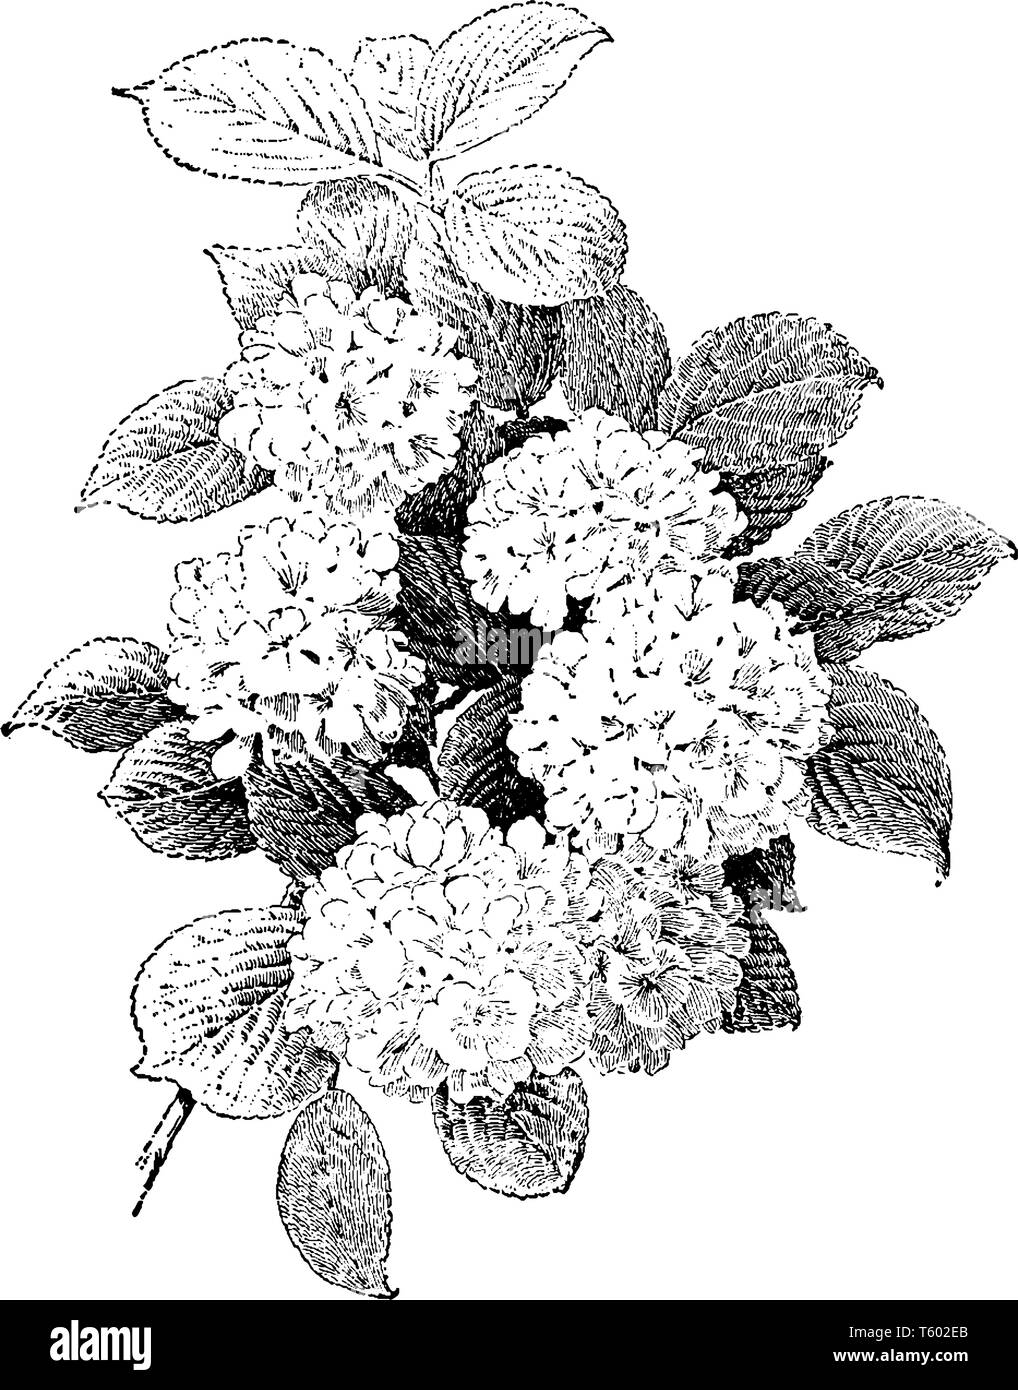 Dieses Bild zeigt einen kleinen Strauch Viburnum Plenum genannt, gehört zu den Obstbaum Honig geben, vintage Strichzeichnung oder Gravur Abbildung. Stock Vektor